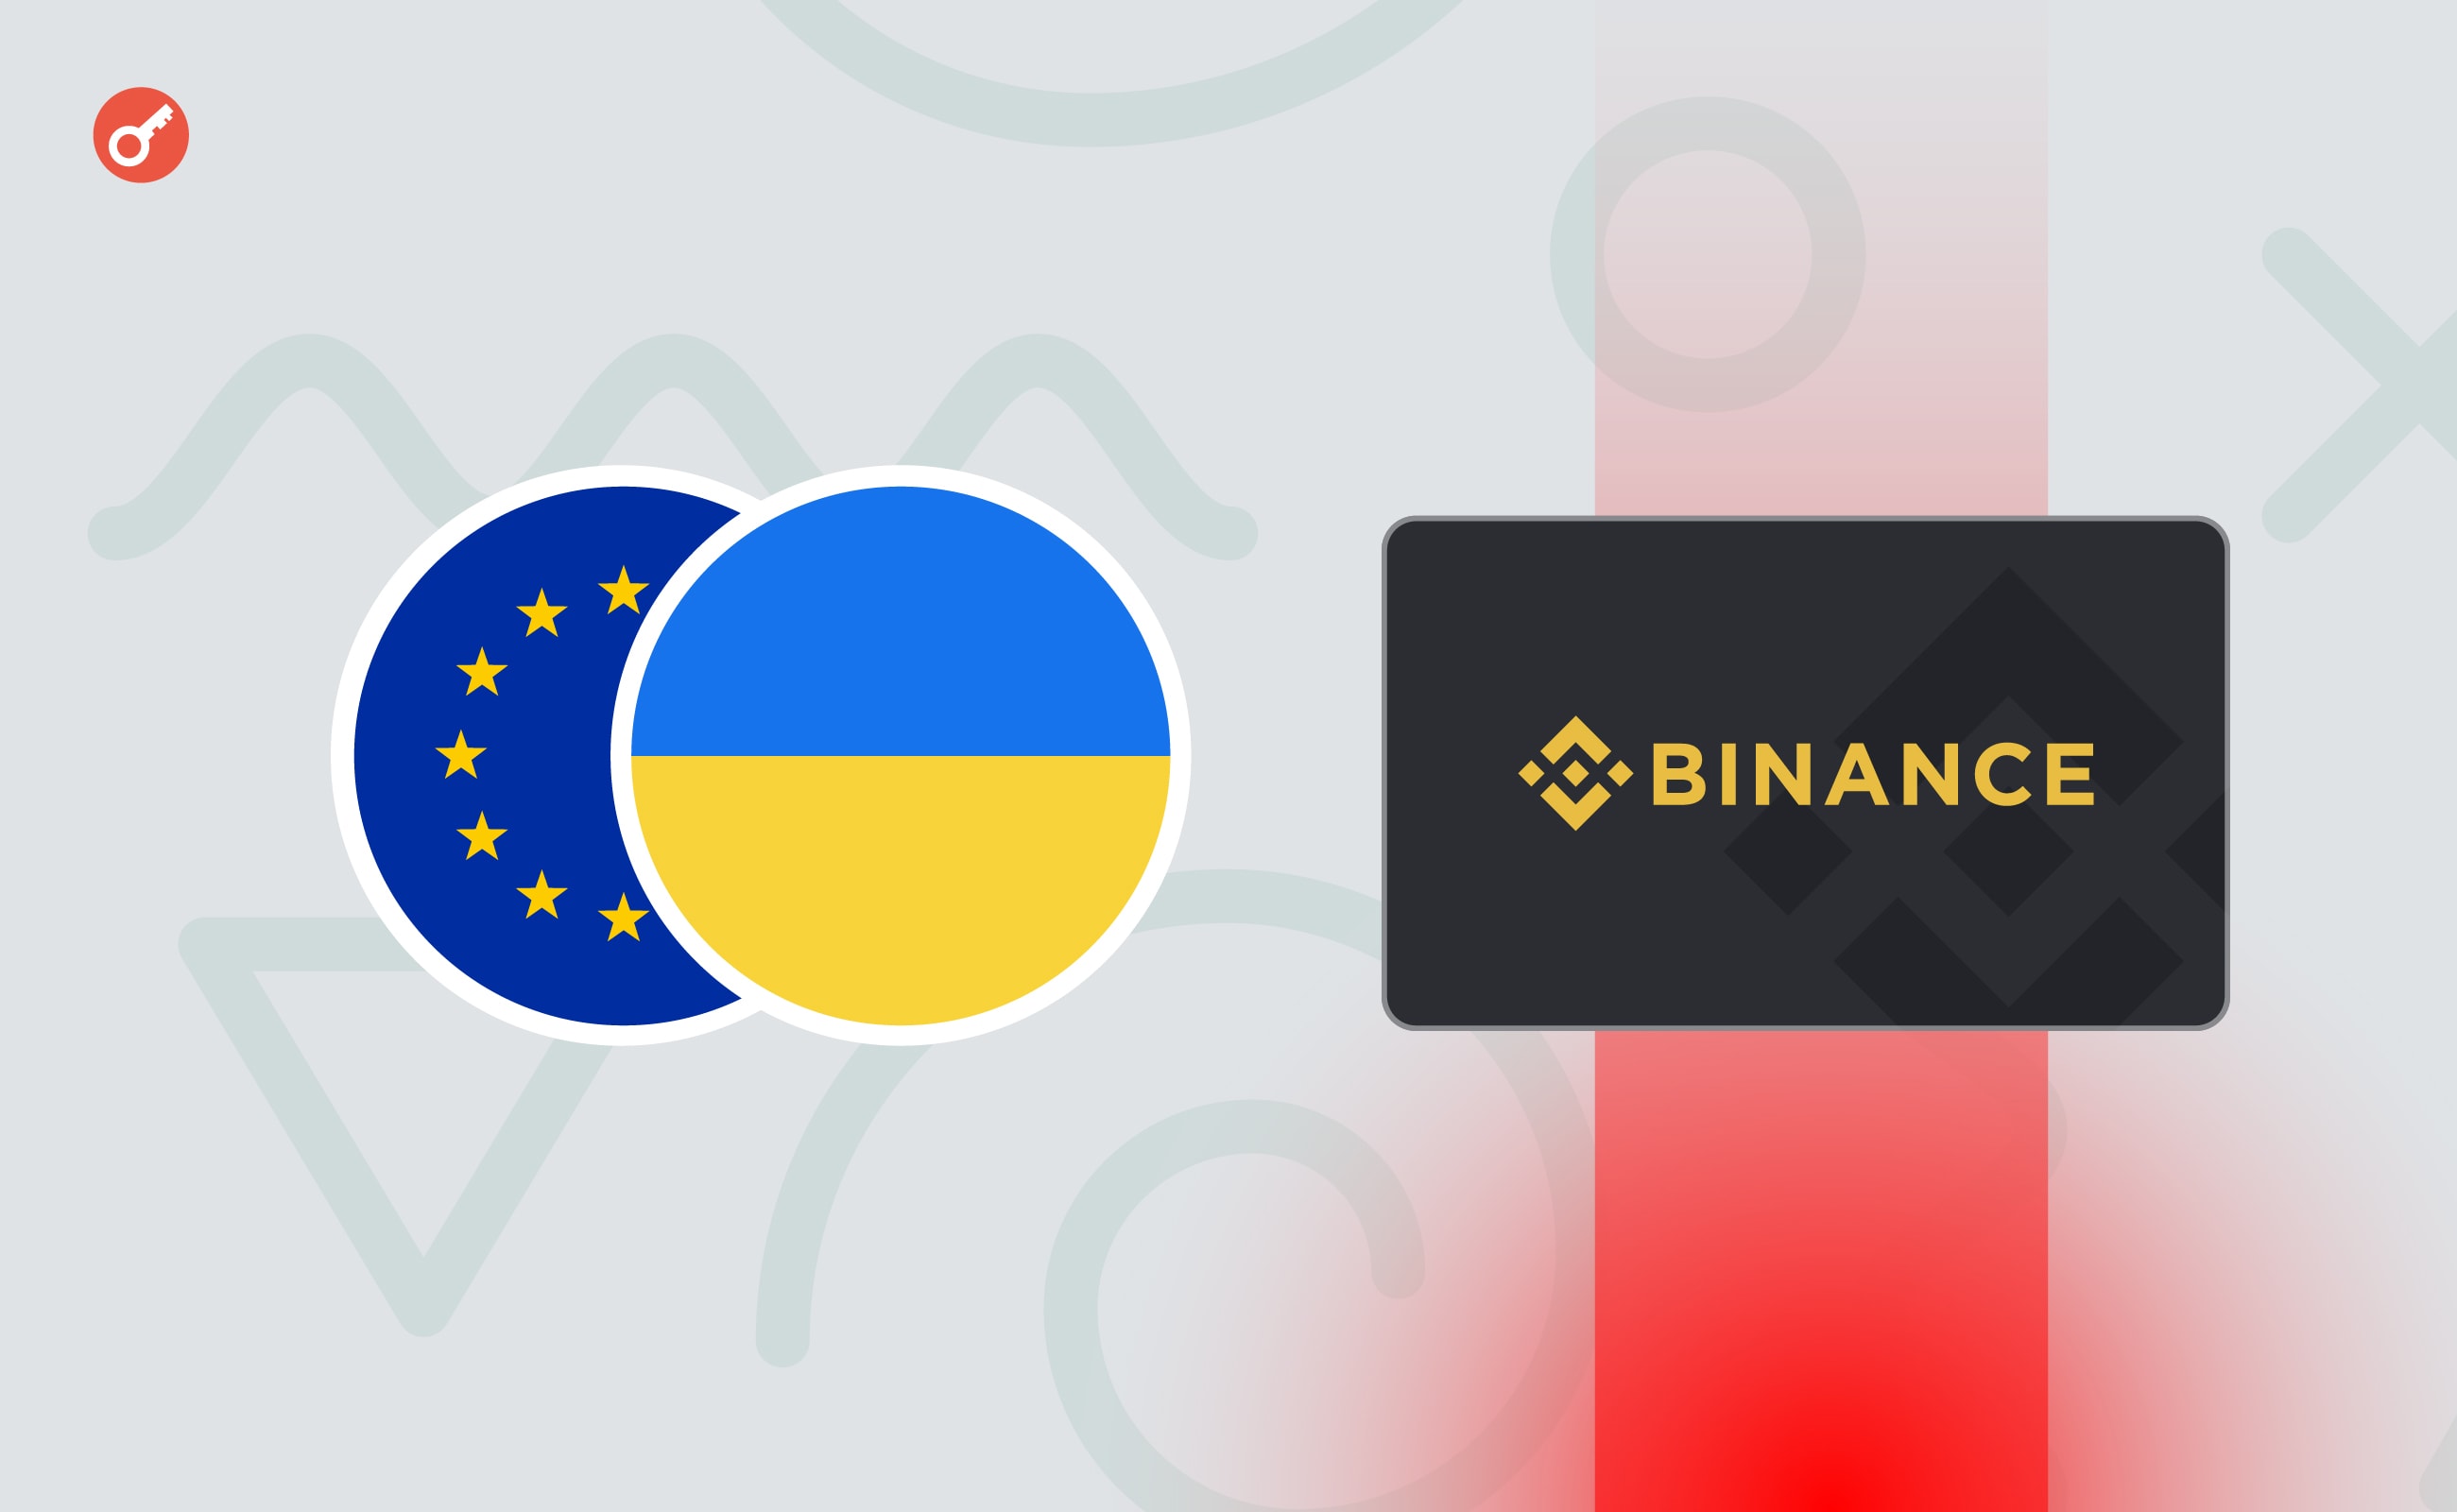 Binance Card перестала работать в Украине и Европе. Разбираемся, что произошло и какие есть альтернативы. Заглавный коллаж новости.